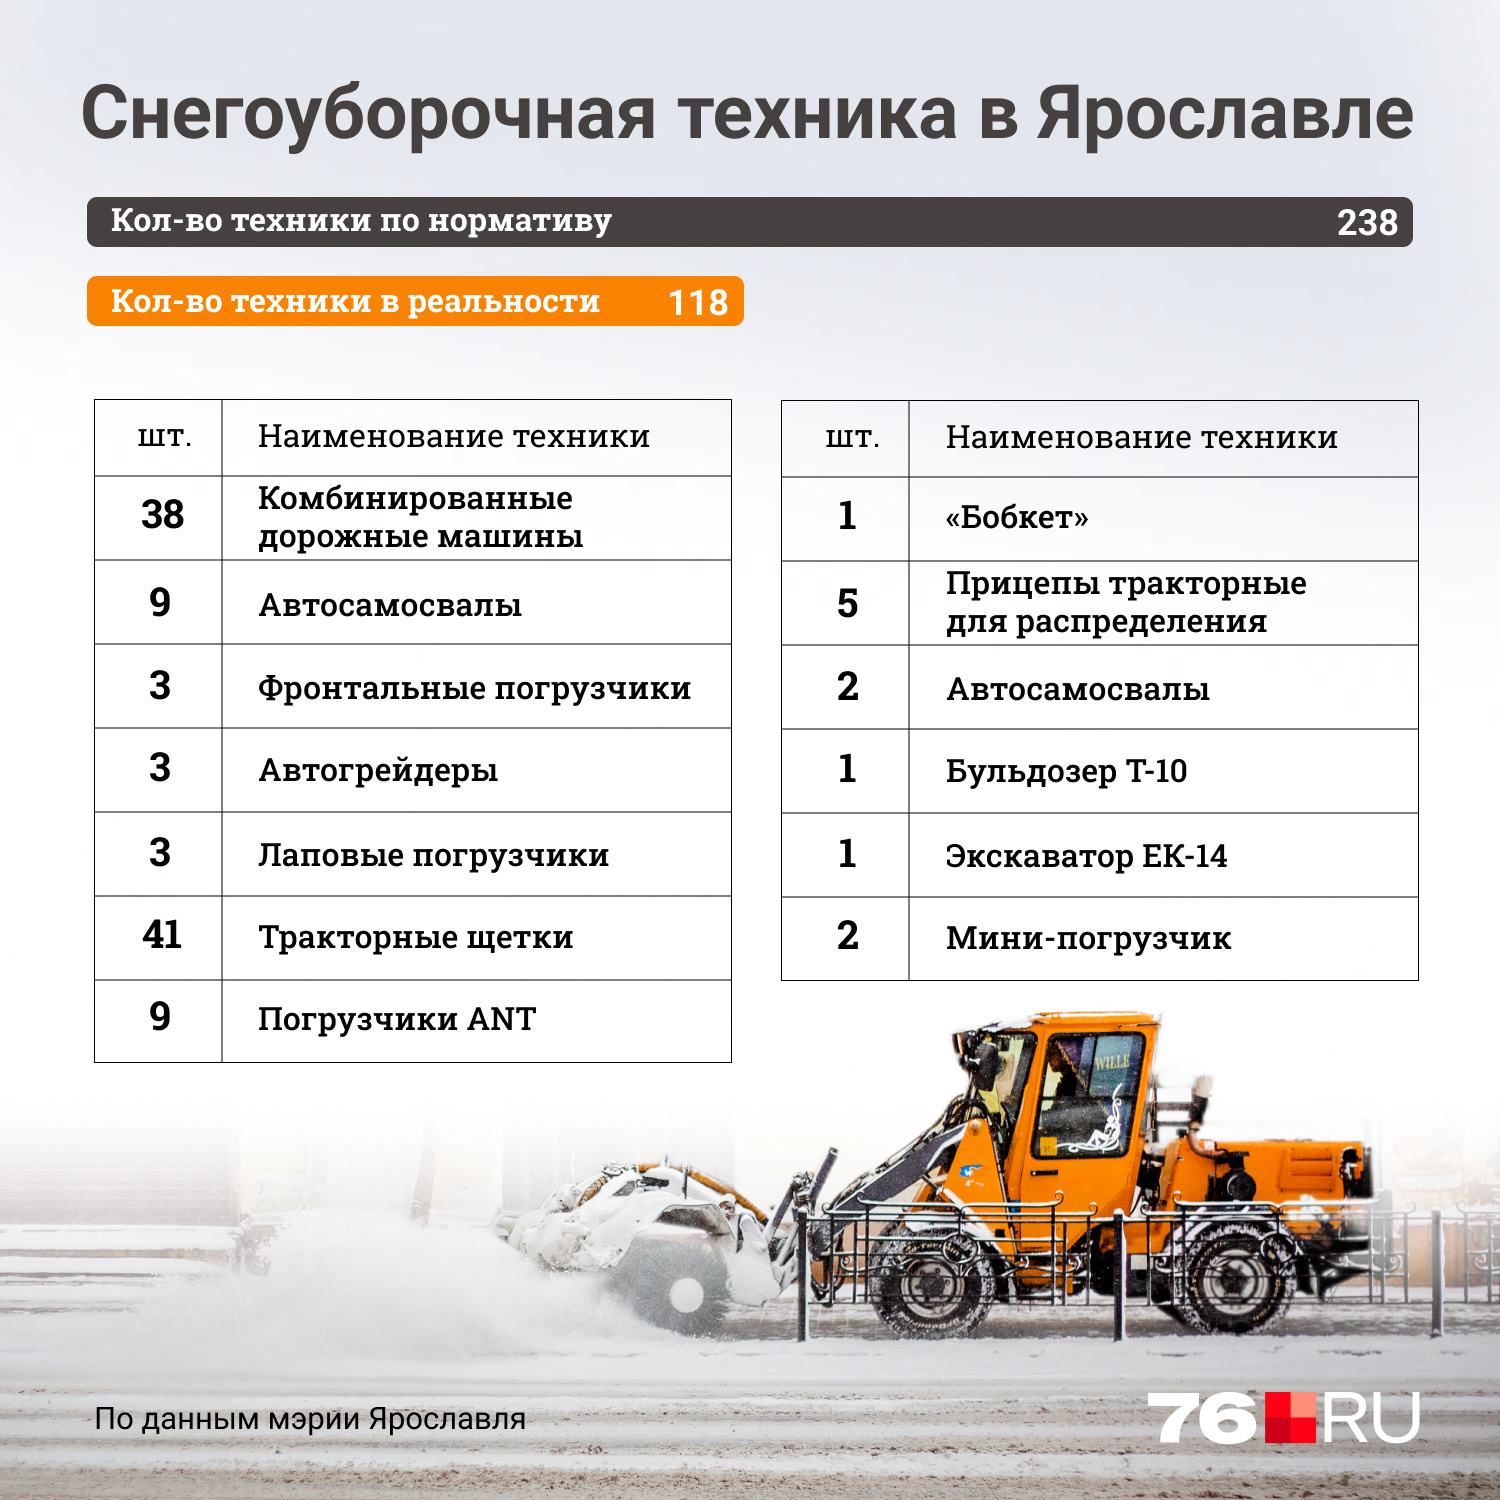 Список снегоуборочной техники Ярославля зимой 2022 года